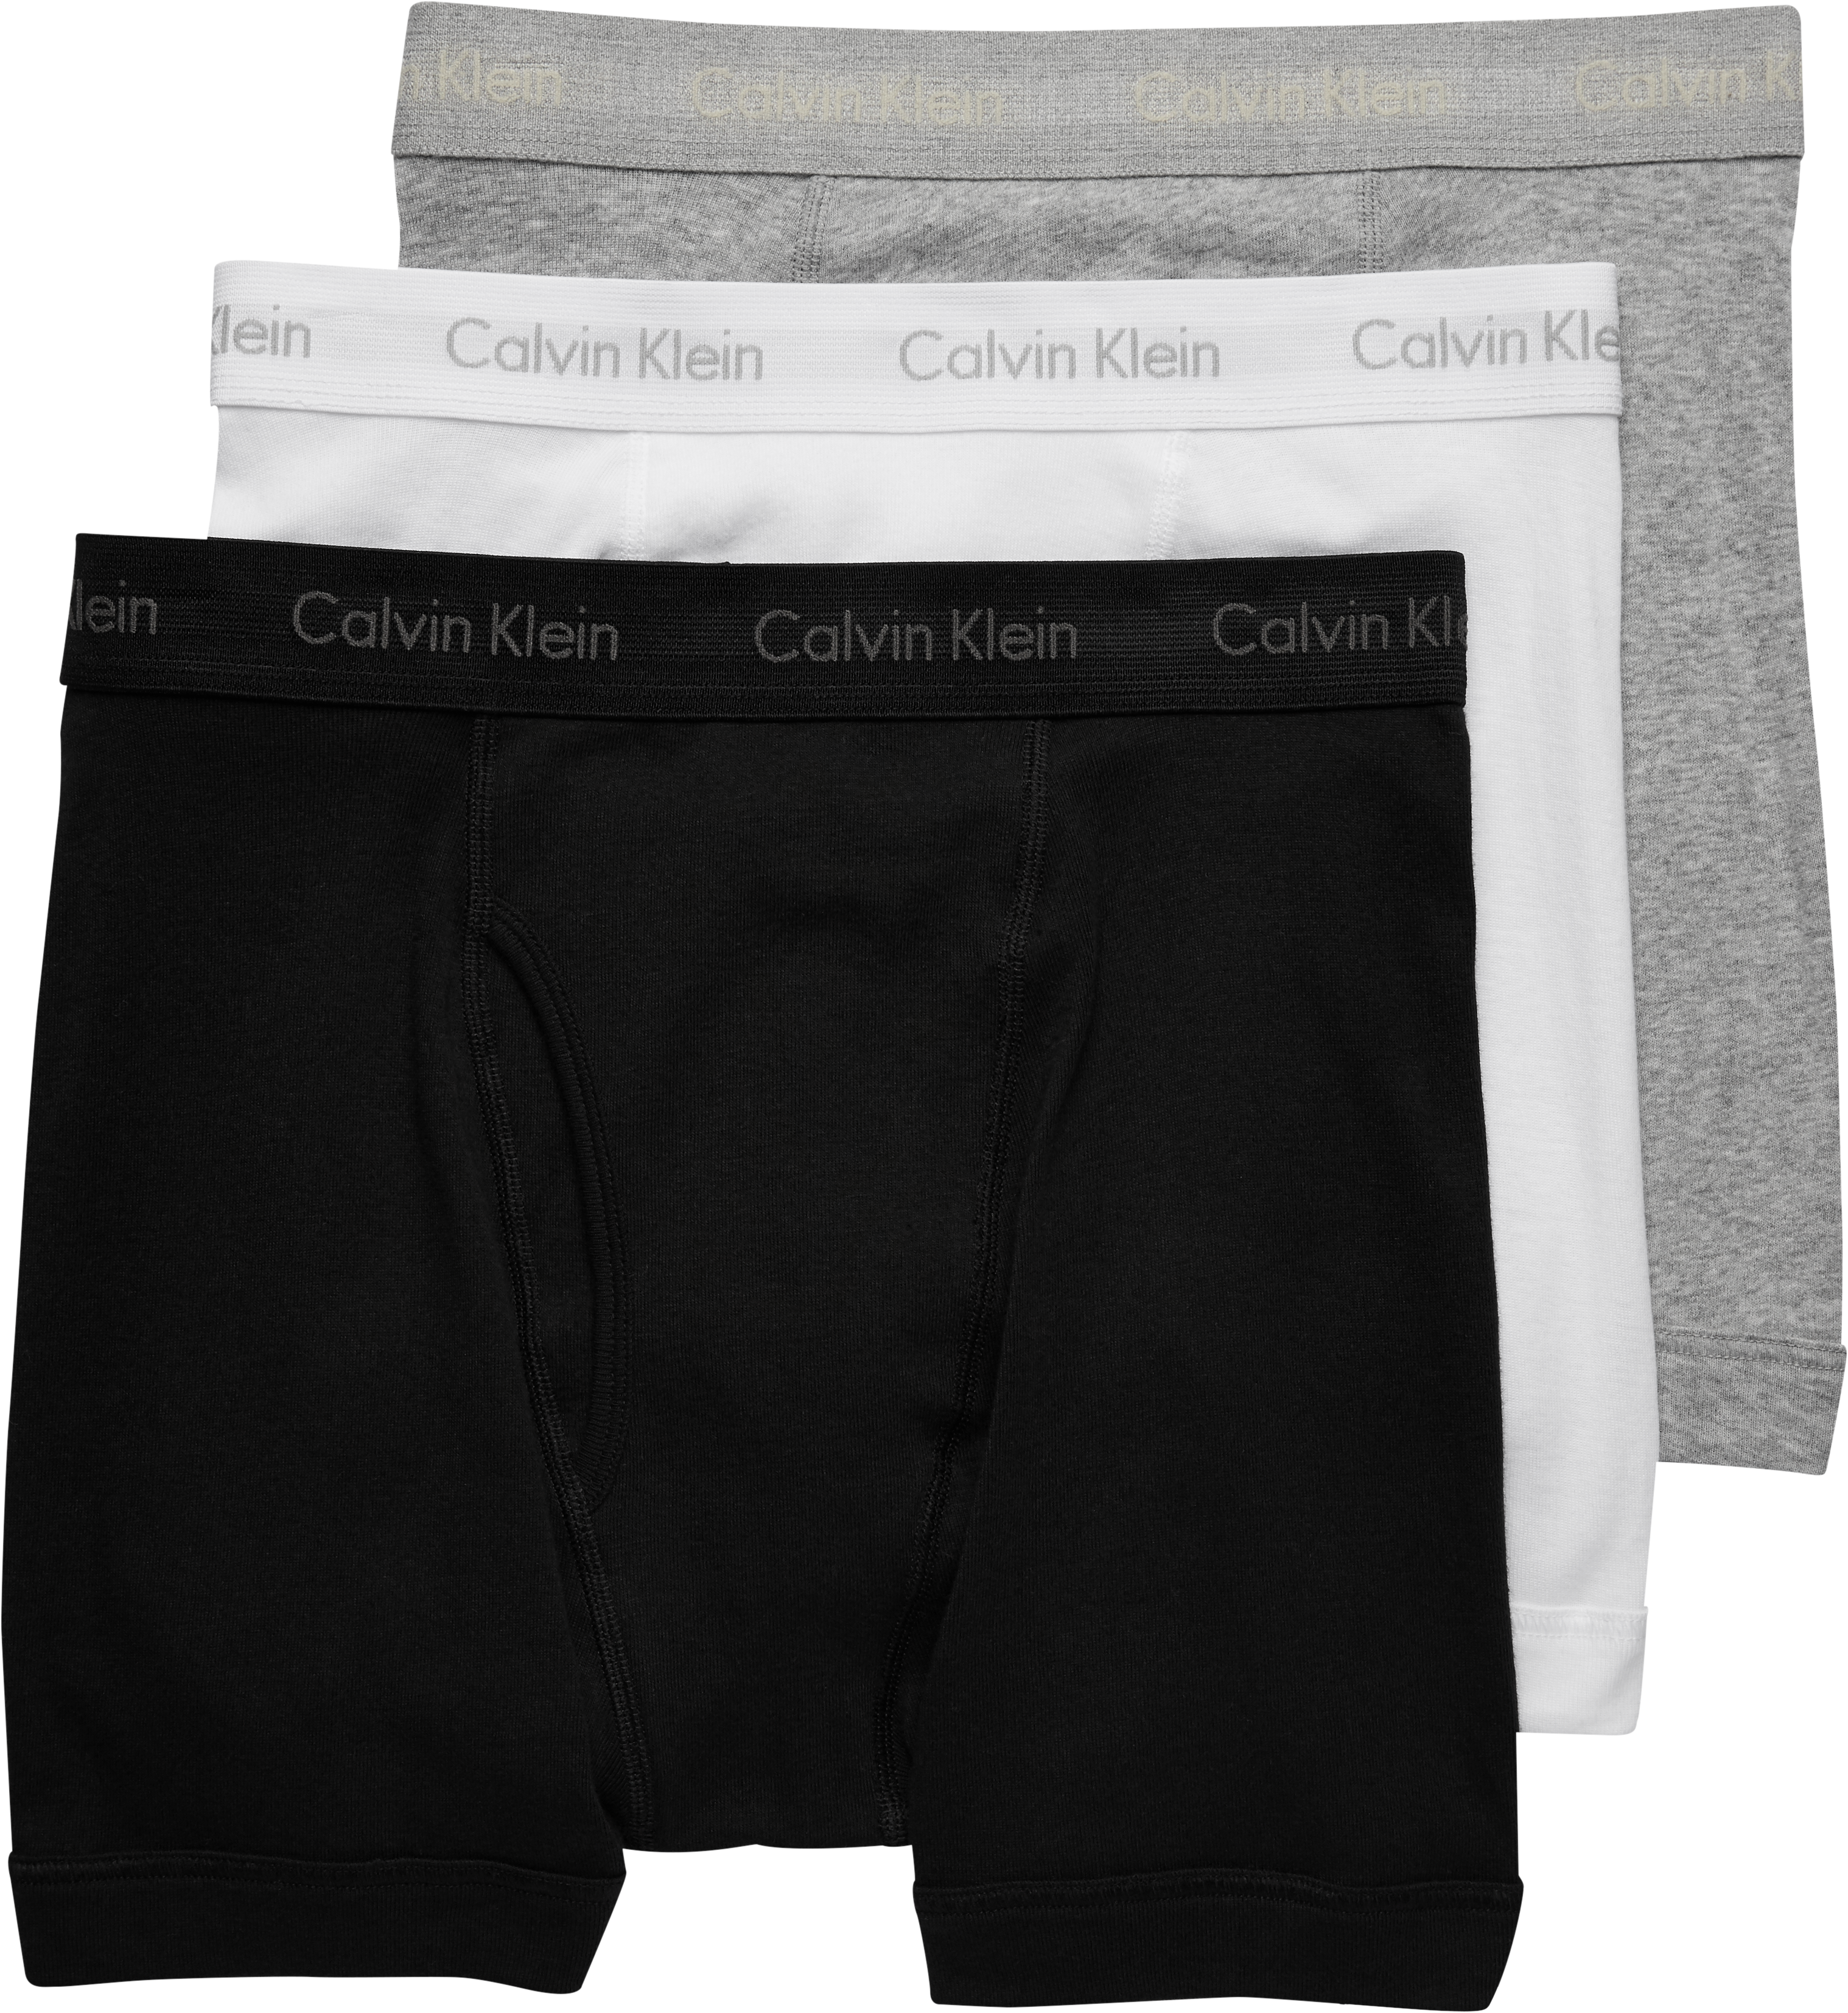 calvin klein comfort fit boxer briefs